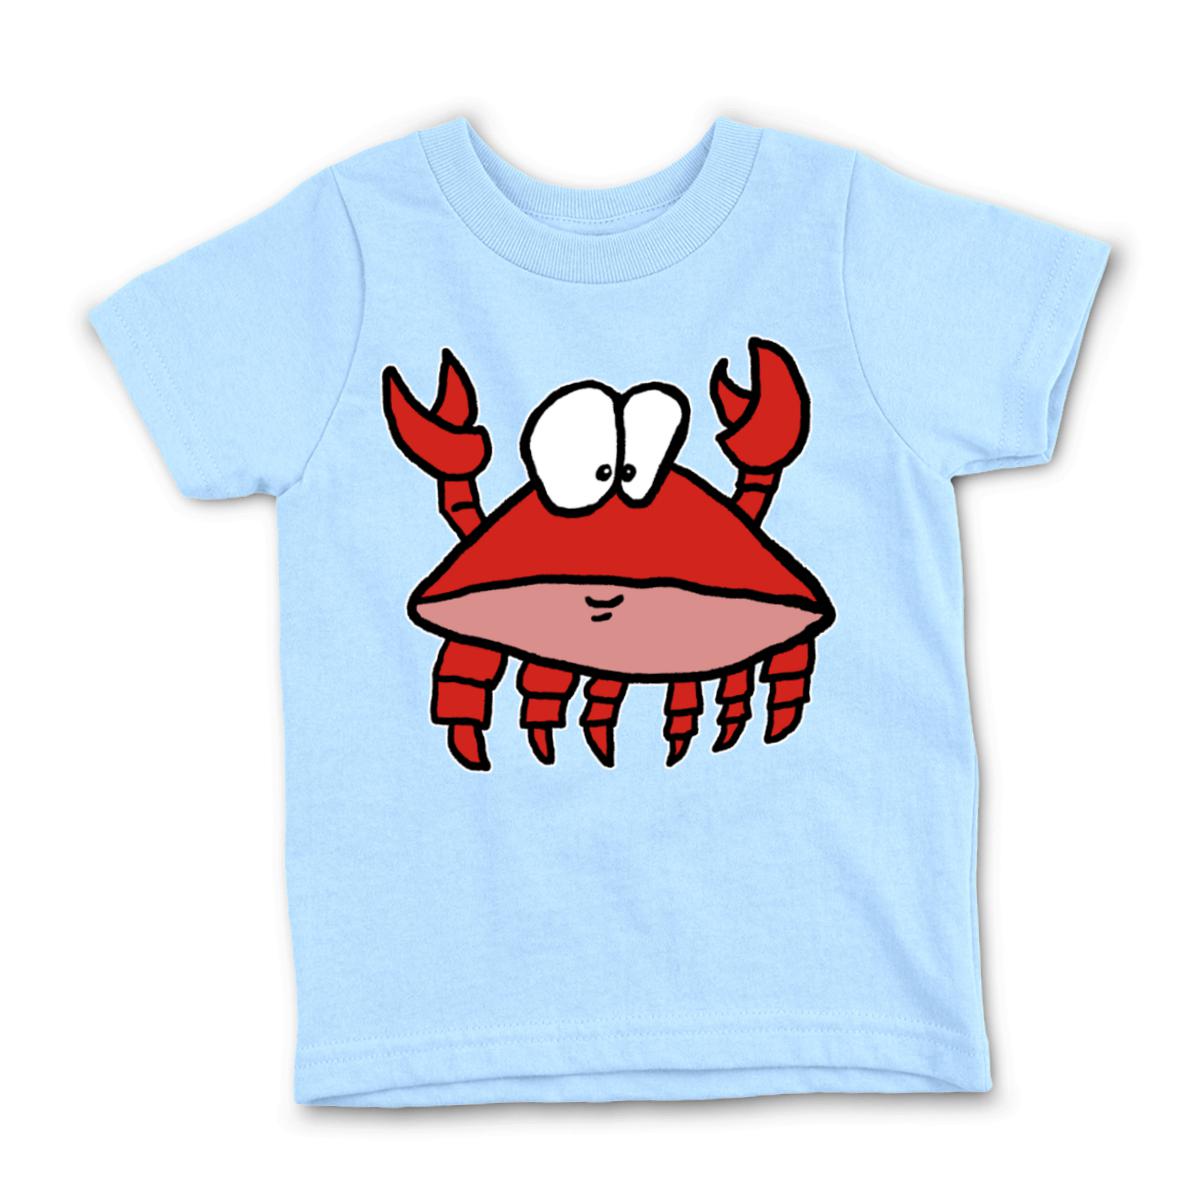 Crab 2.0 Kid's Tee Medium light-blue